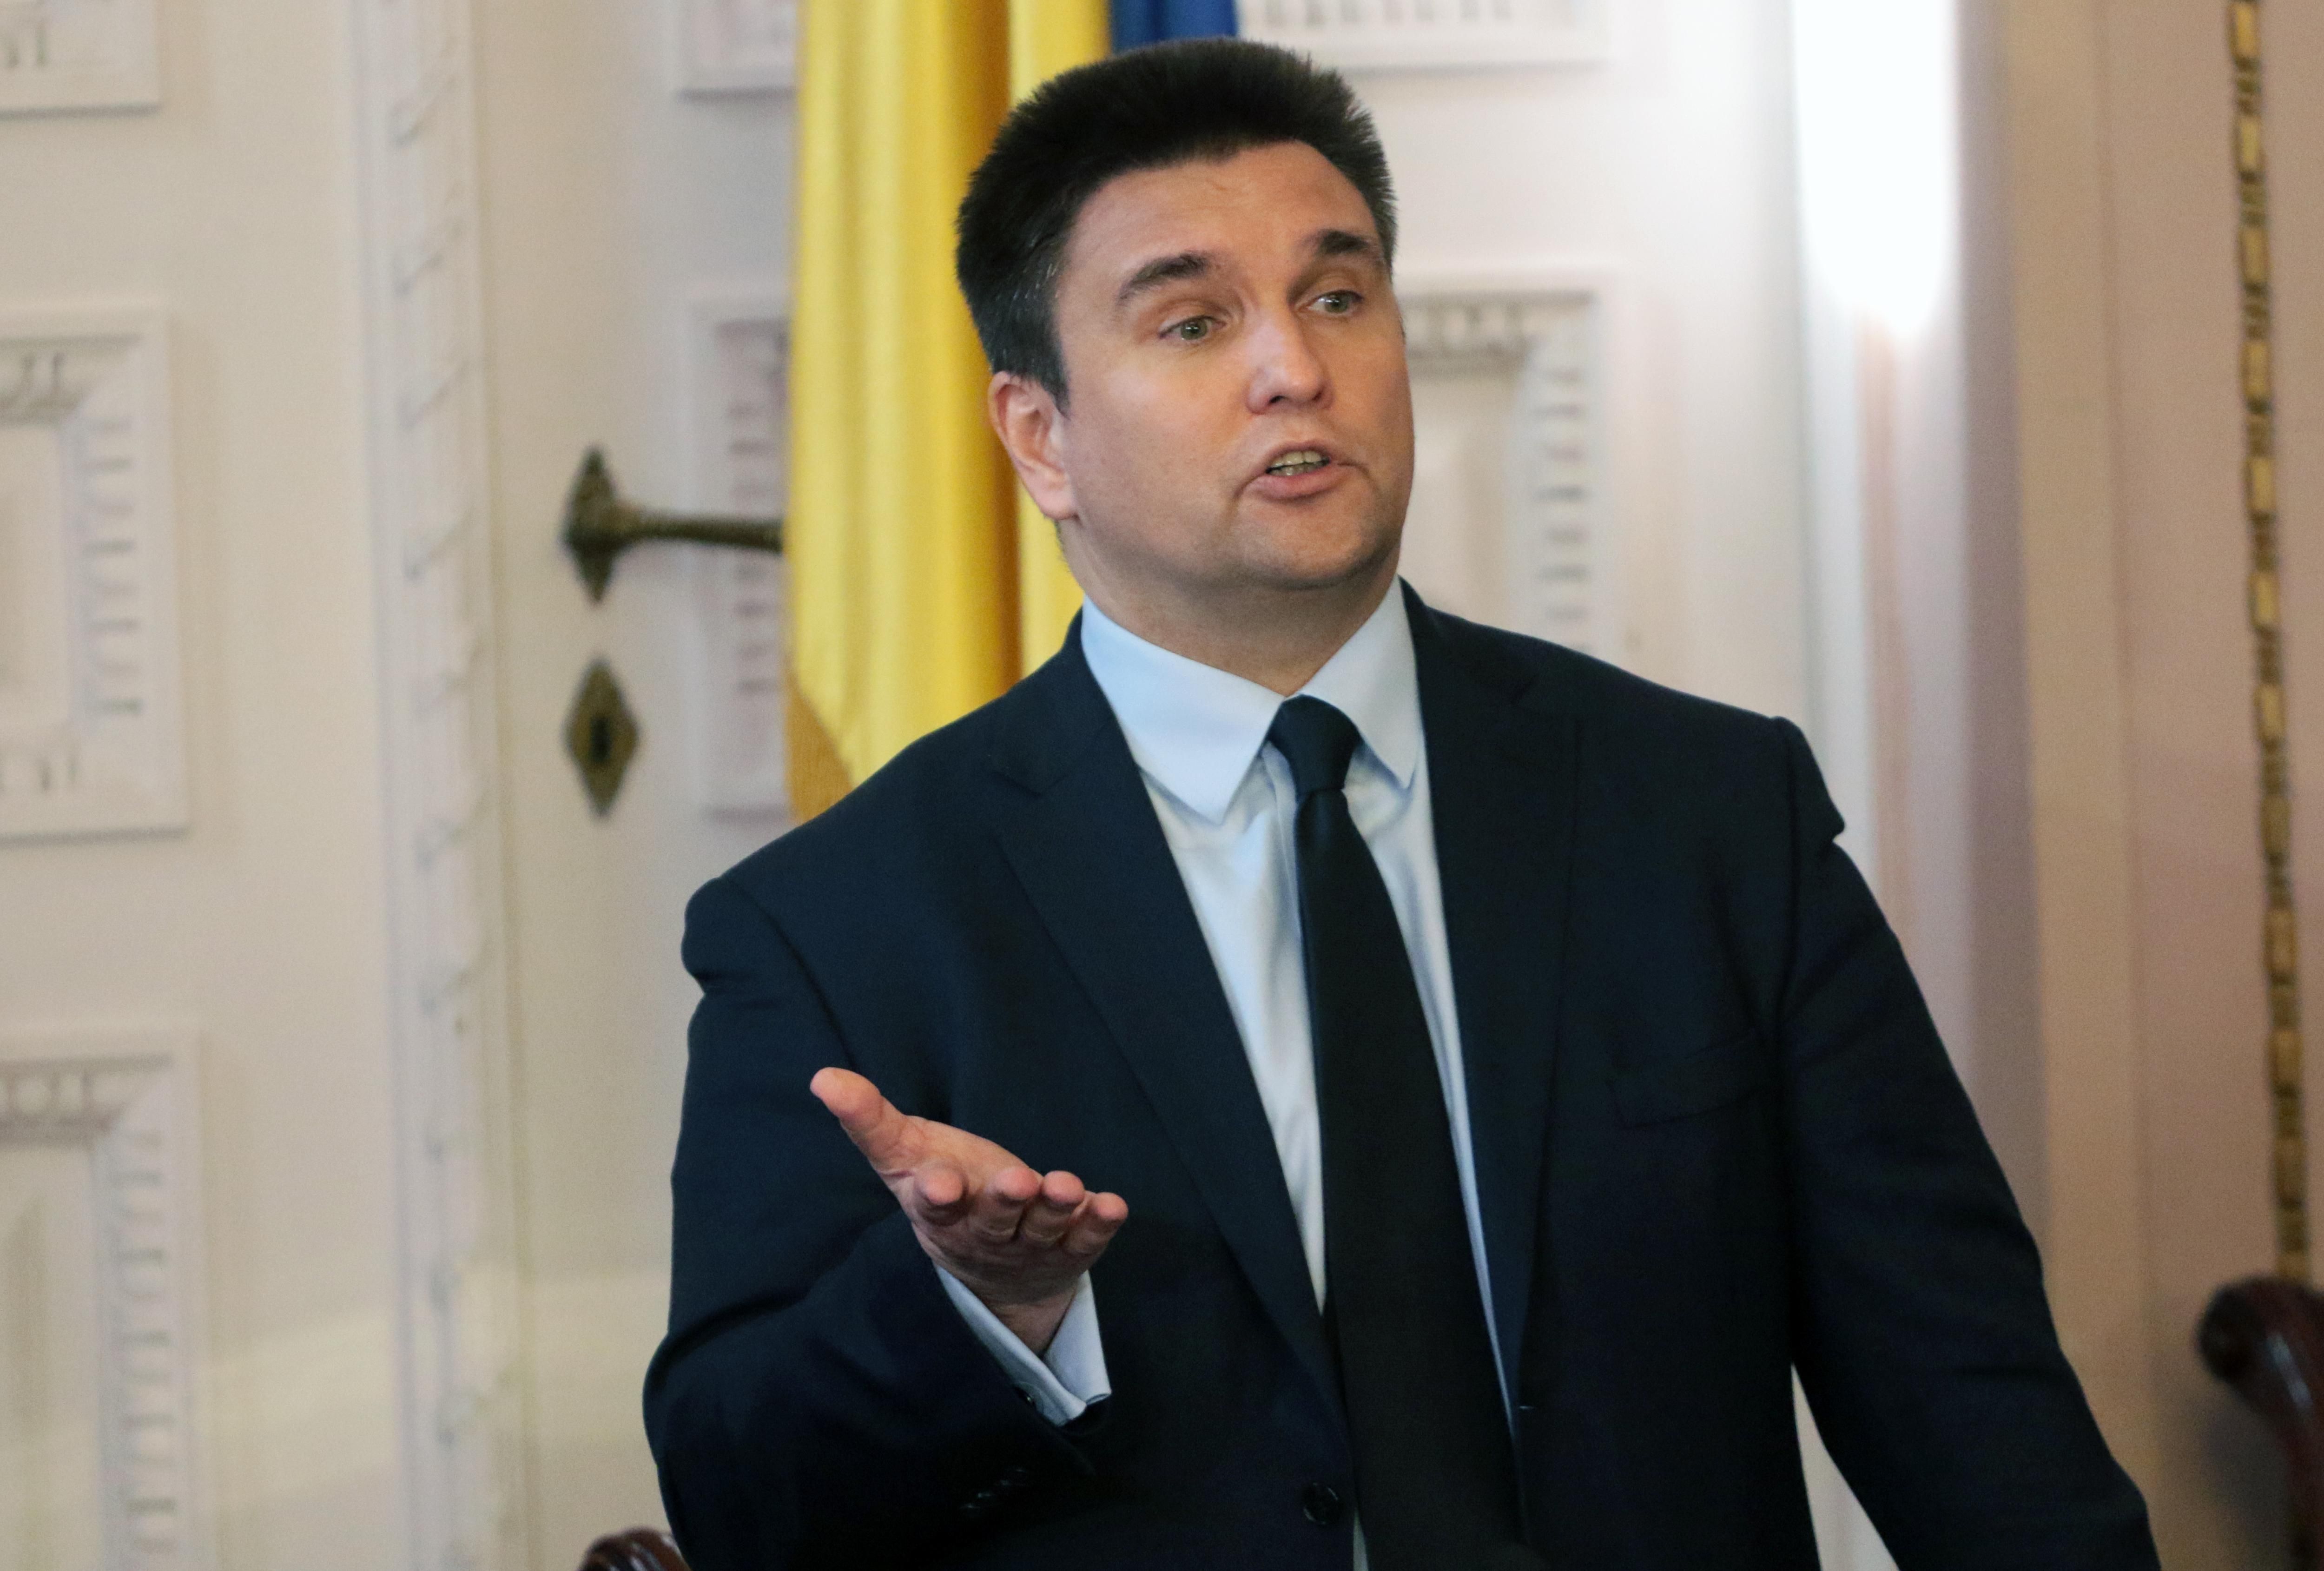 Росія провокуватиме регіональні конфлікти в Україні, щоб відколювати регіони, – Клімкін